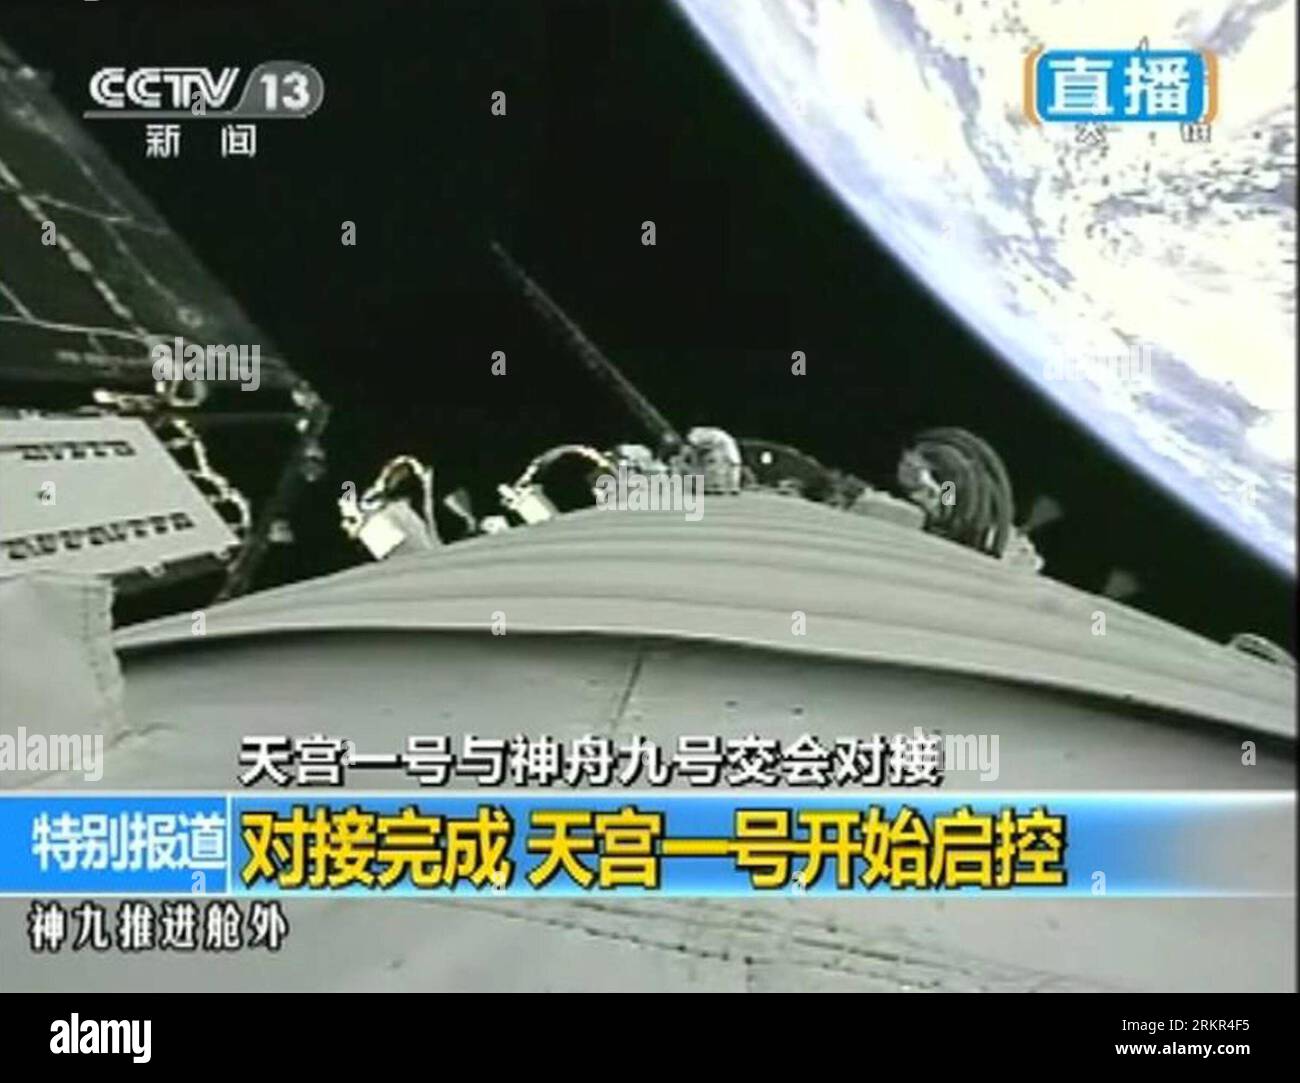 Bildnummer : 58115825 Datum : 18.06.2012 Copyright : imago/Xinhua (120618) -- JIUQUAN, 18 juin 2012 (Xinhua) -- une capture télévisée prise le 18 juin 2012 montre un vaisseau spatial habité Shenzhou-9 qui effectue un amarrage avec le module de laboratoire spatial Tiangong-1. (Xinhua) (ry) (SHENZHOU-9-TIANGONG-1)CHINA-SHENZHOU-9-TIANGONG-1-DOCKING (CN) PUBLICATIONxNOTxINxCHN Politik Raumfahrt IX Andockmanöver Capture d'écran xjh x0x 2012 quer premiumd 58115825 Date 18 06 2012 Copyright Imago XINHUA Jiuquan juin 18 2012 la tombe de XINHUA TV prise LE 18 2012 juin montre SHENZHOU 9 vaisseau spatial habité effectuant un amarrage avec le Tian Gong 1 Spa Banque D'Images